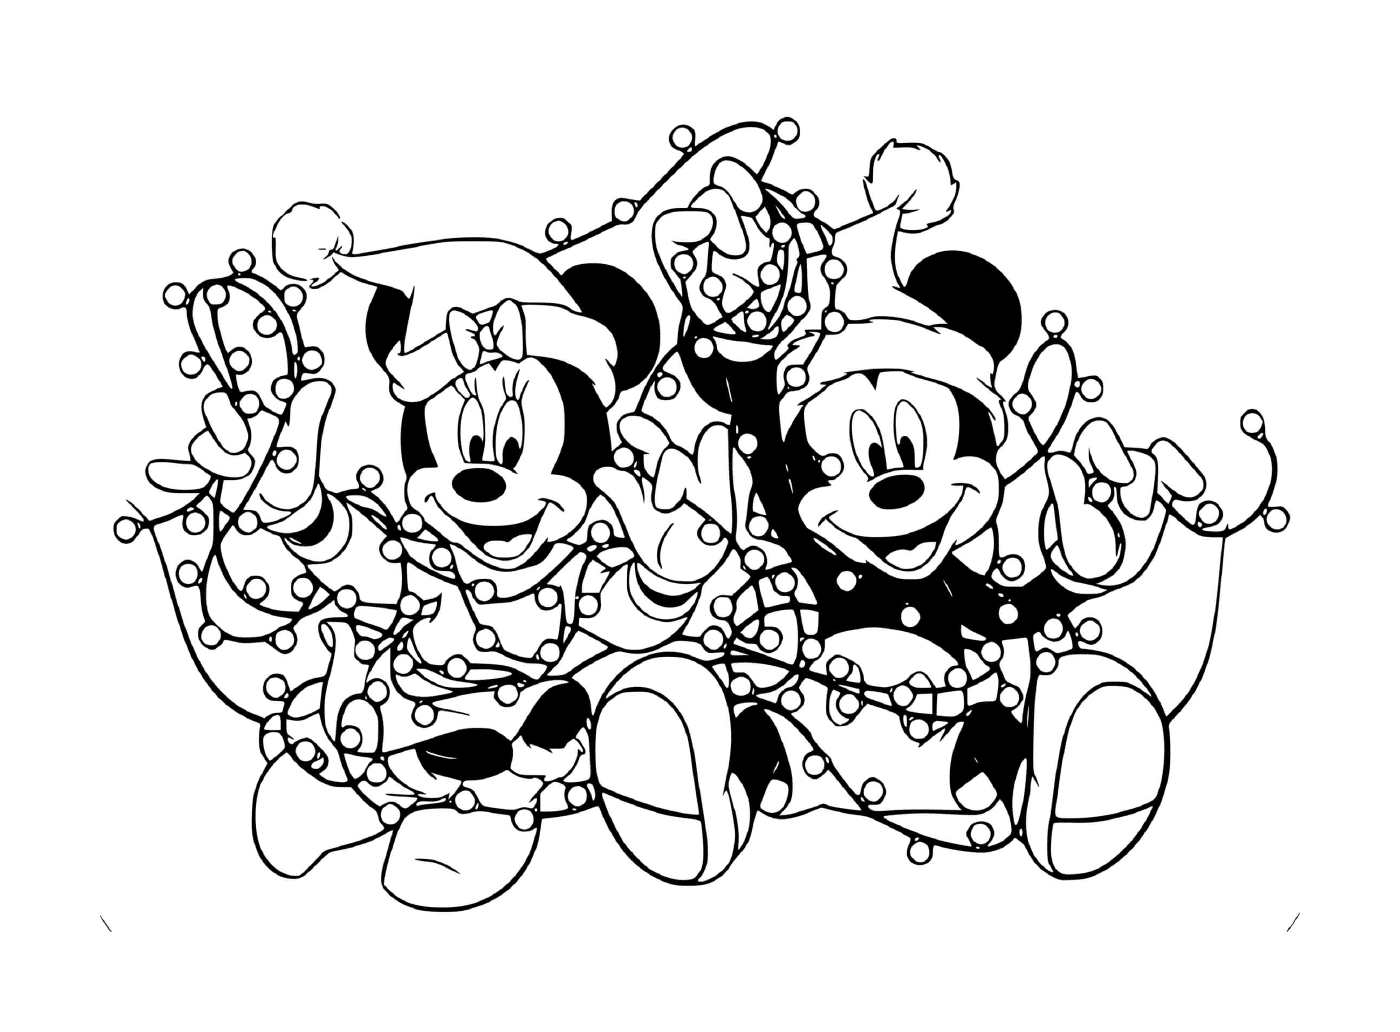  Mickey und Minnie verstrickten sich in die Lichter 